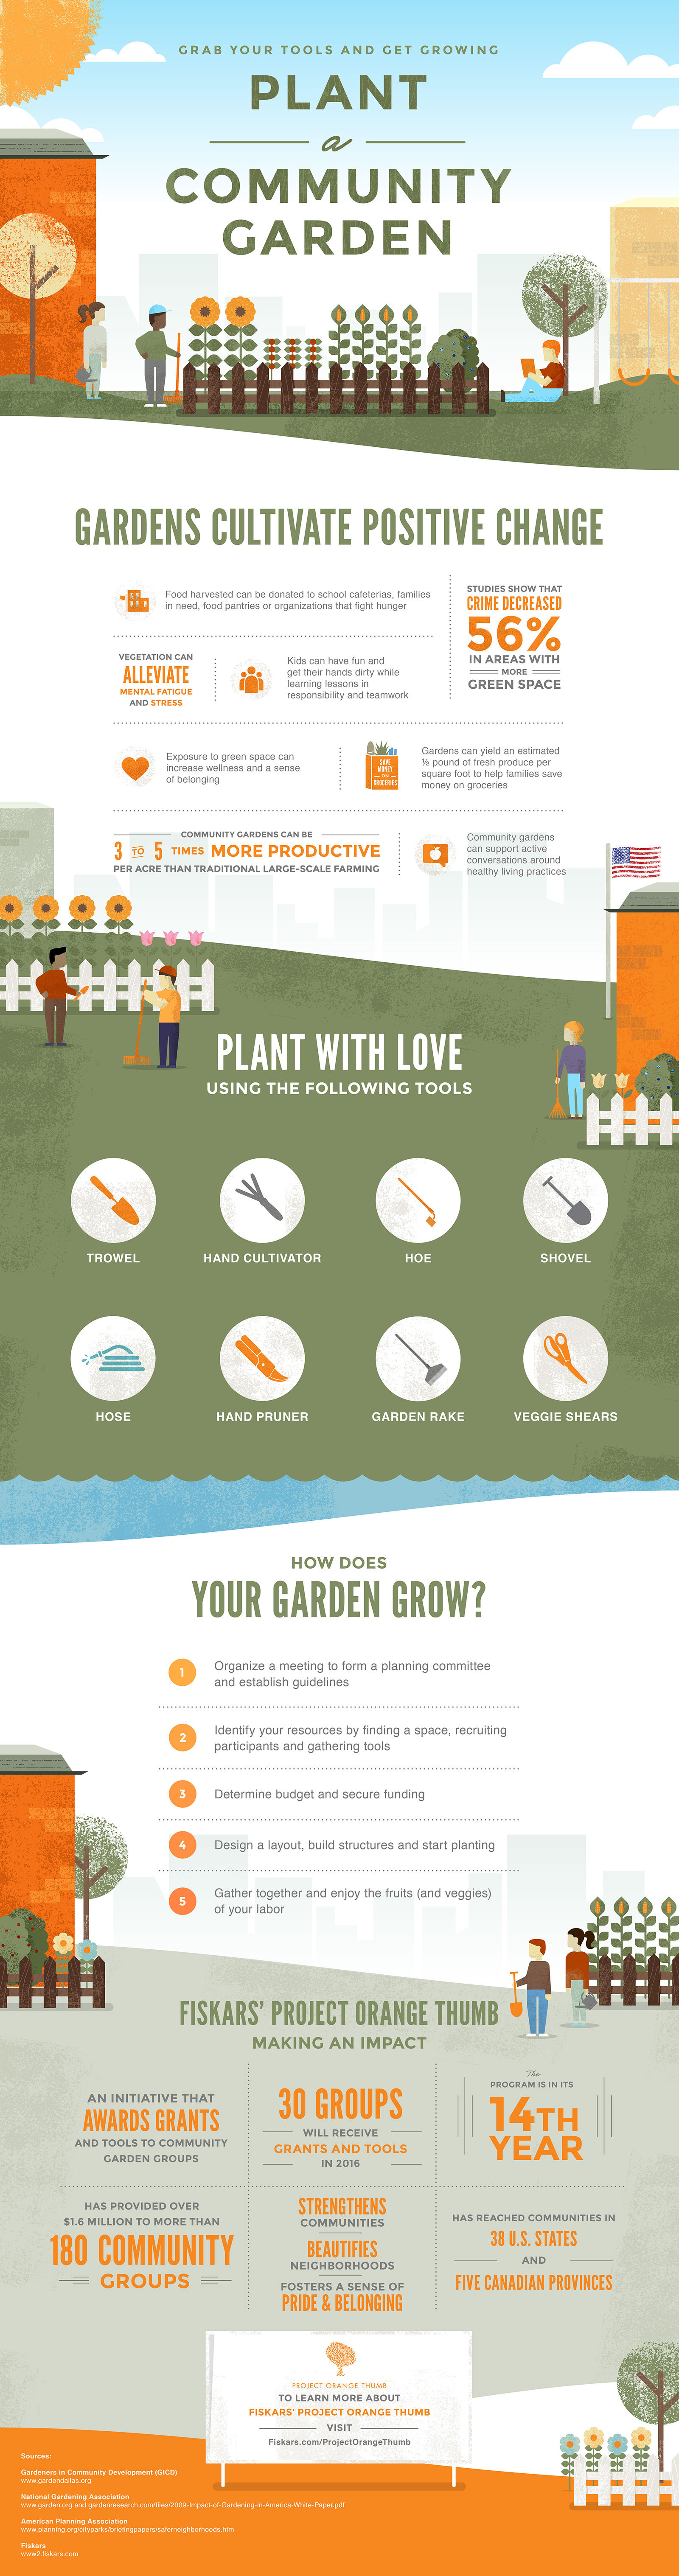 Garden Grant Recipients Announced For Fiskars Project Orange